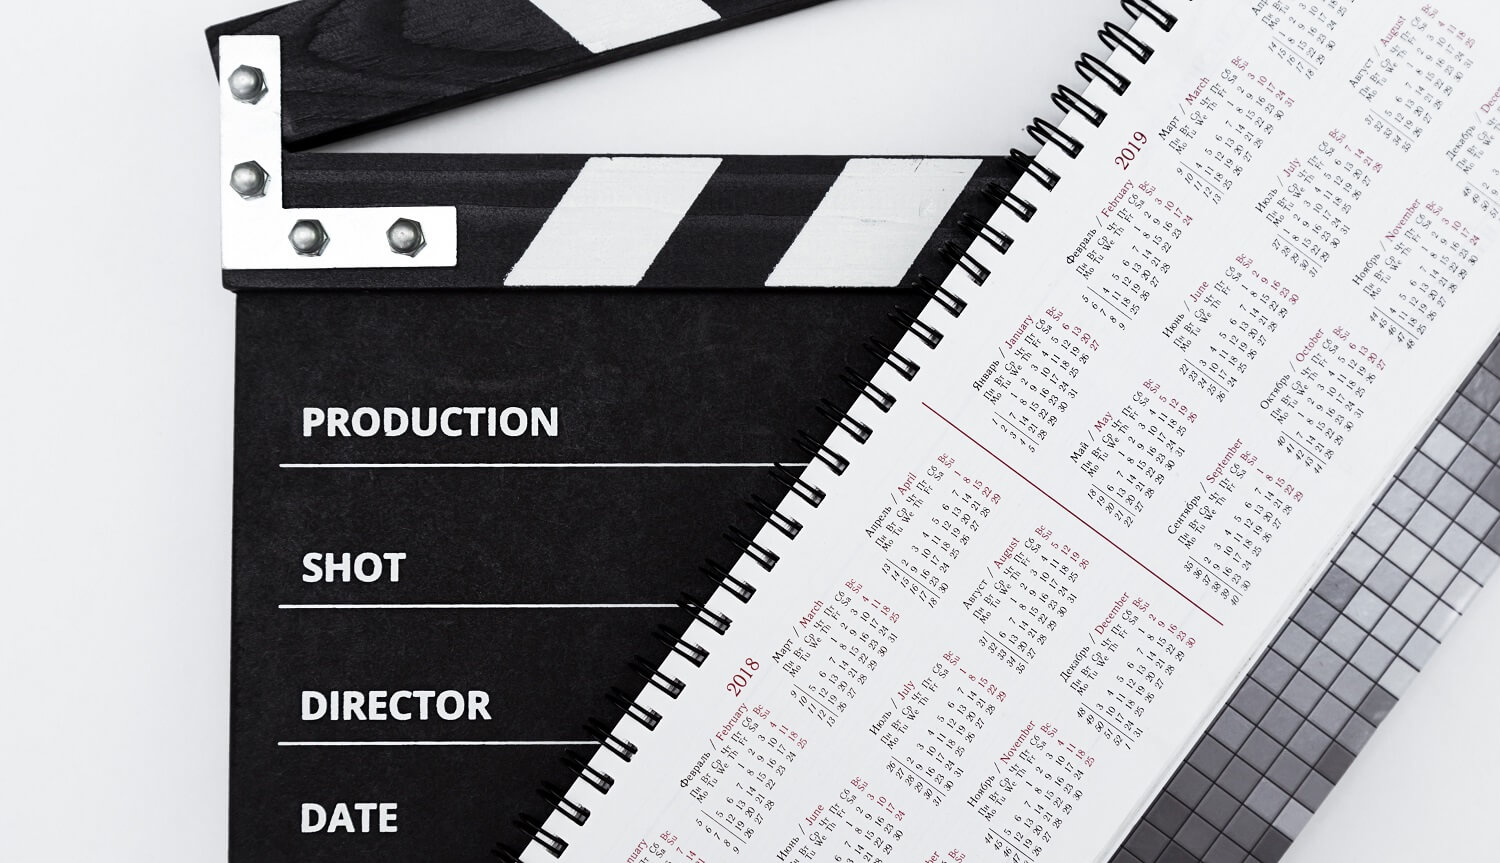 Das Bild zeigt mit einer Filmklappe und einem Kalender wichtige Informationen, die ein Drehplan enthalten muss.